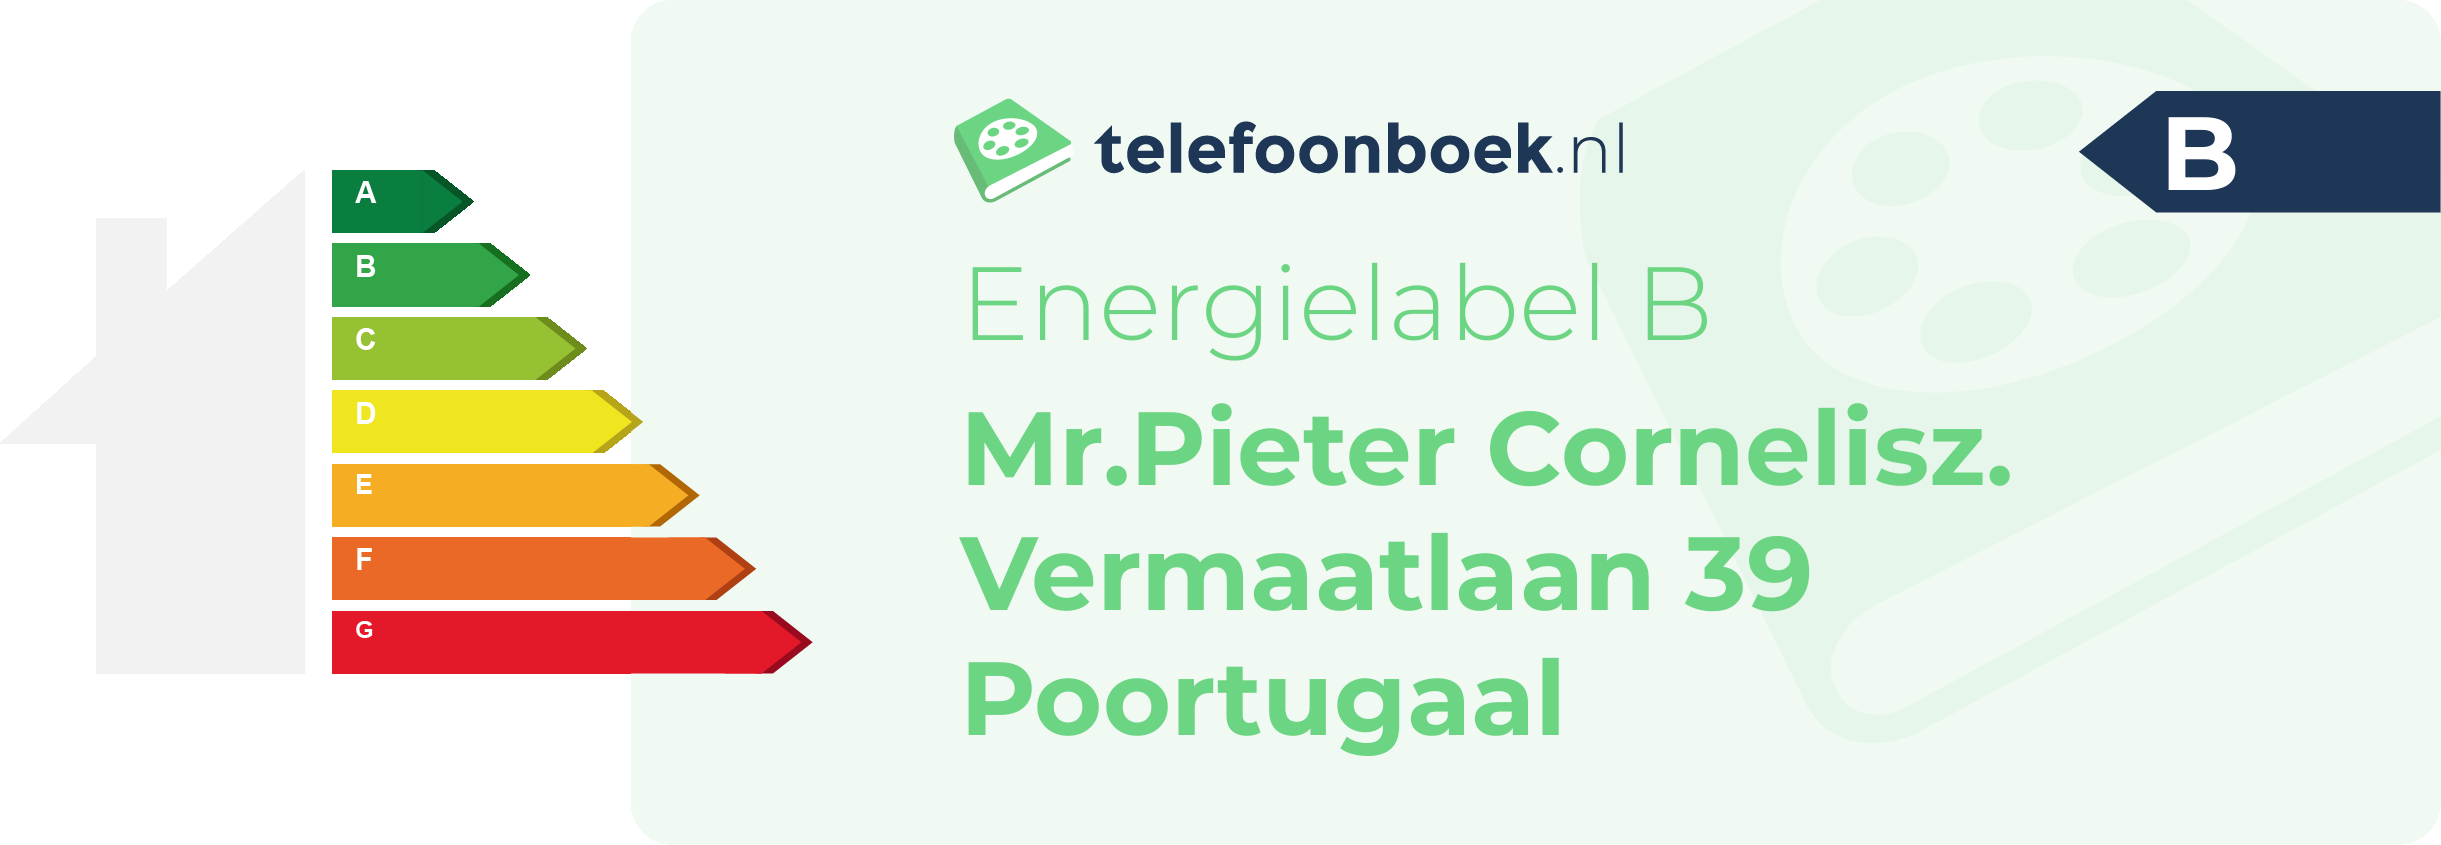 Energielabel Mr.Pieter Cornelisz. Vermaatlaan 39 Poortugaal